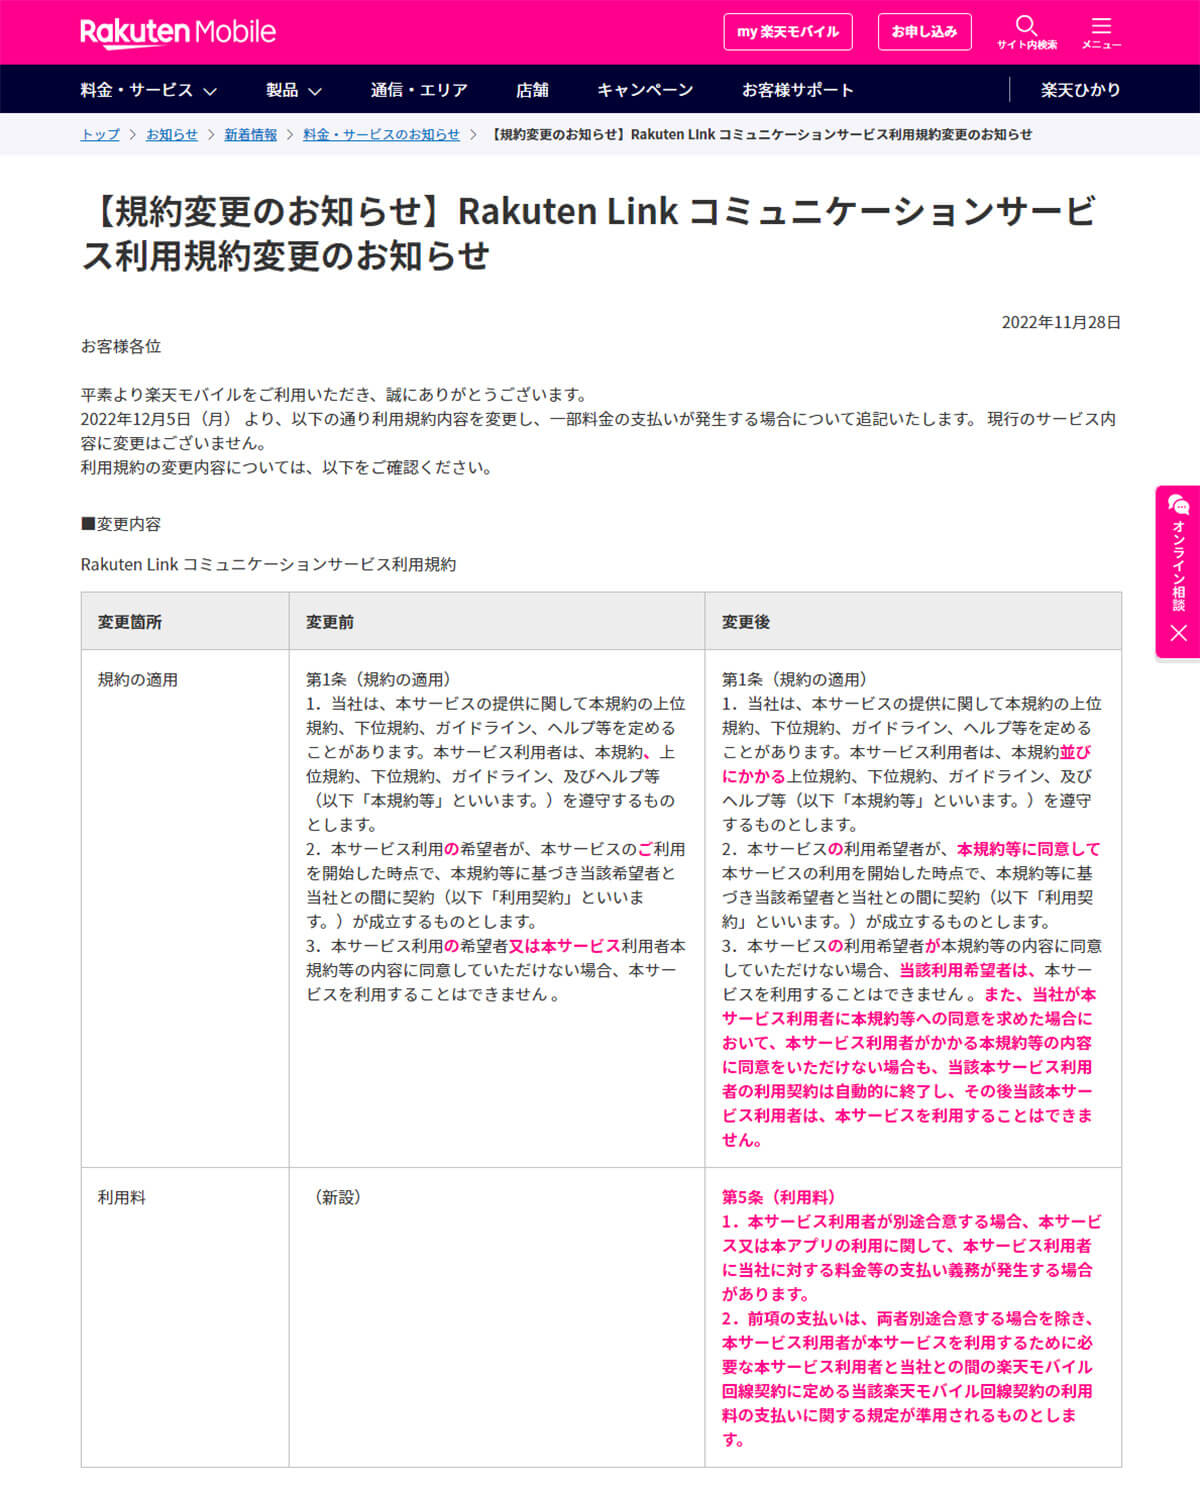 楽天モバイル「【規約変更のお知らせ】Rakuten Link コミュニケーションサービス利用規約変更のお知らせ」